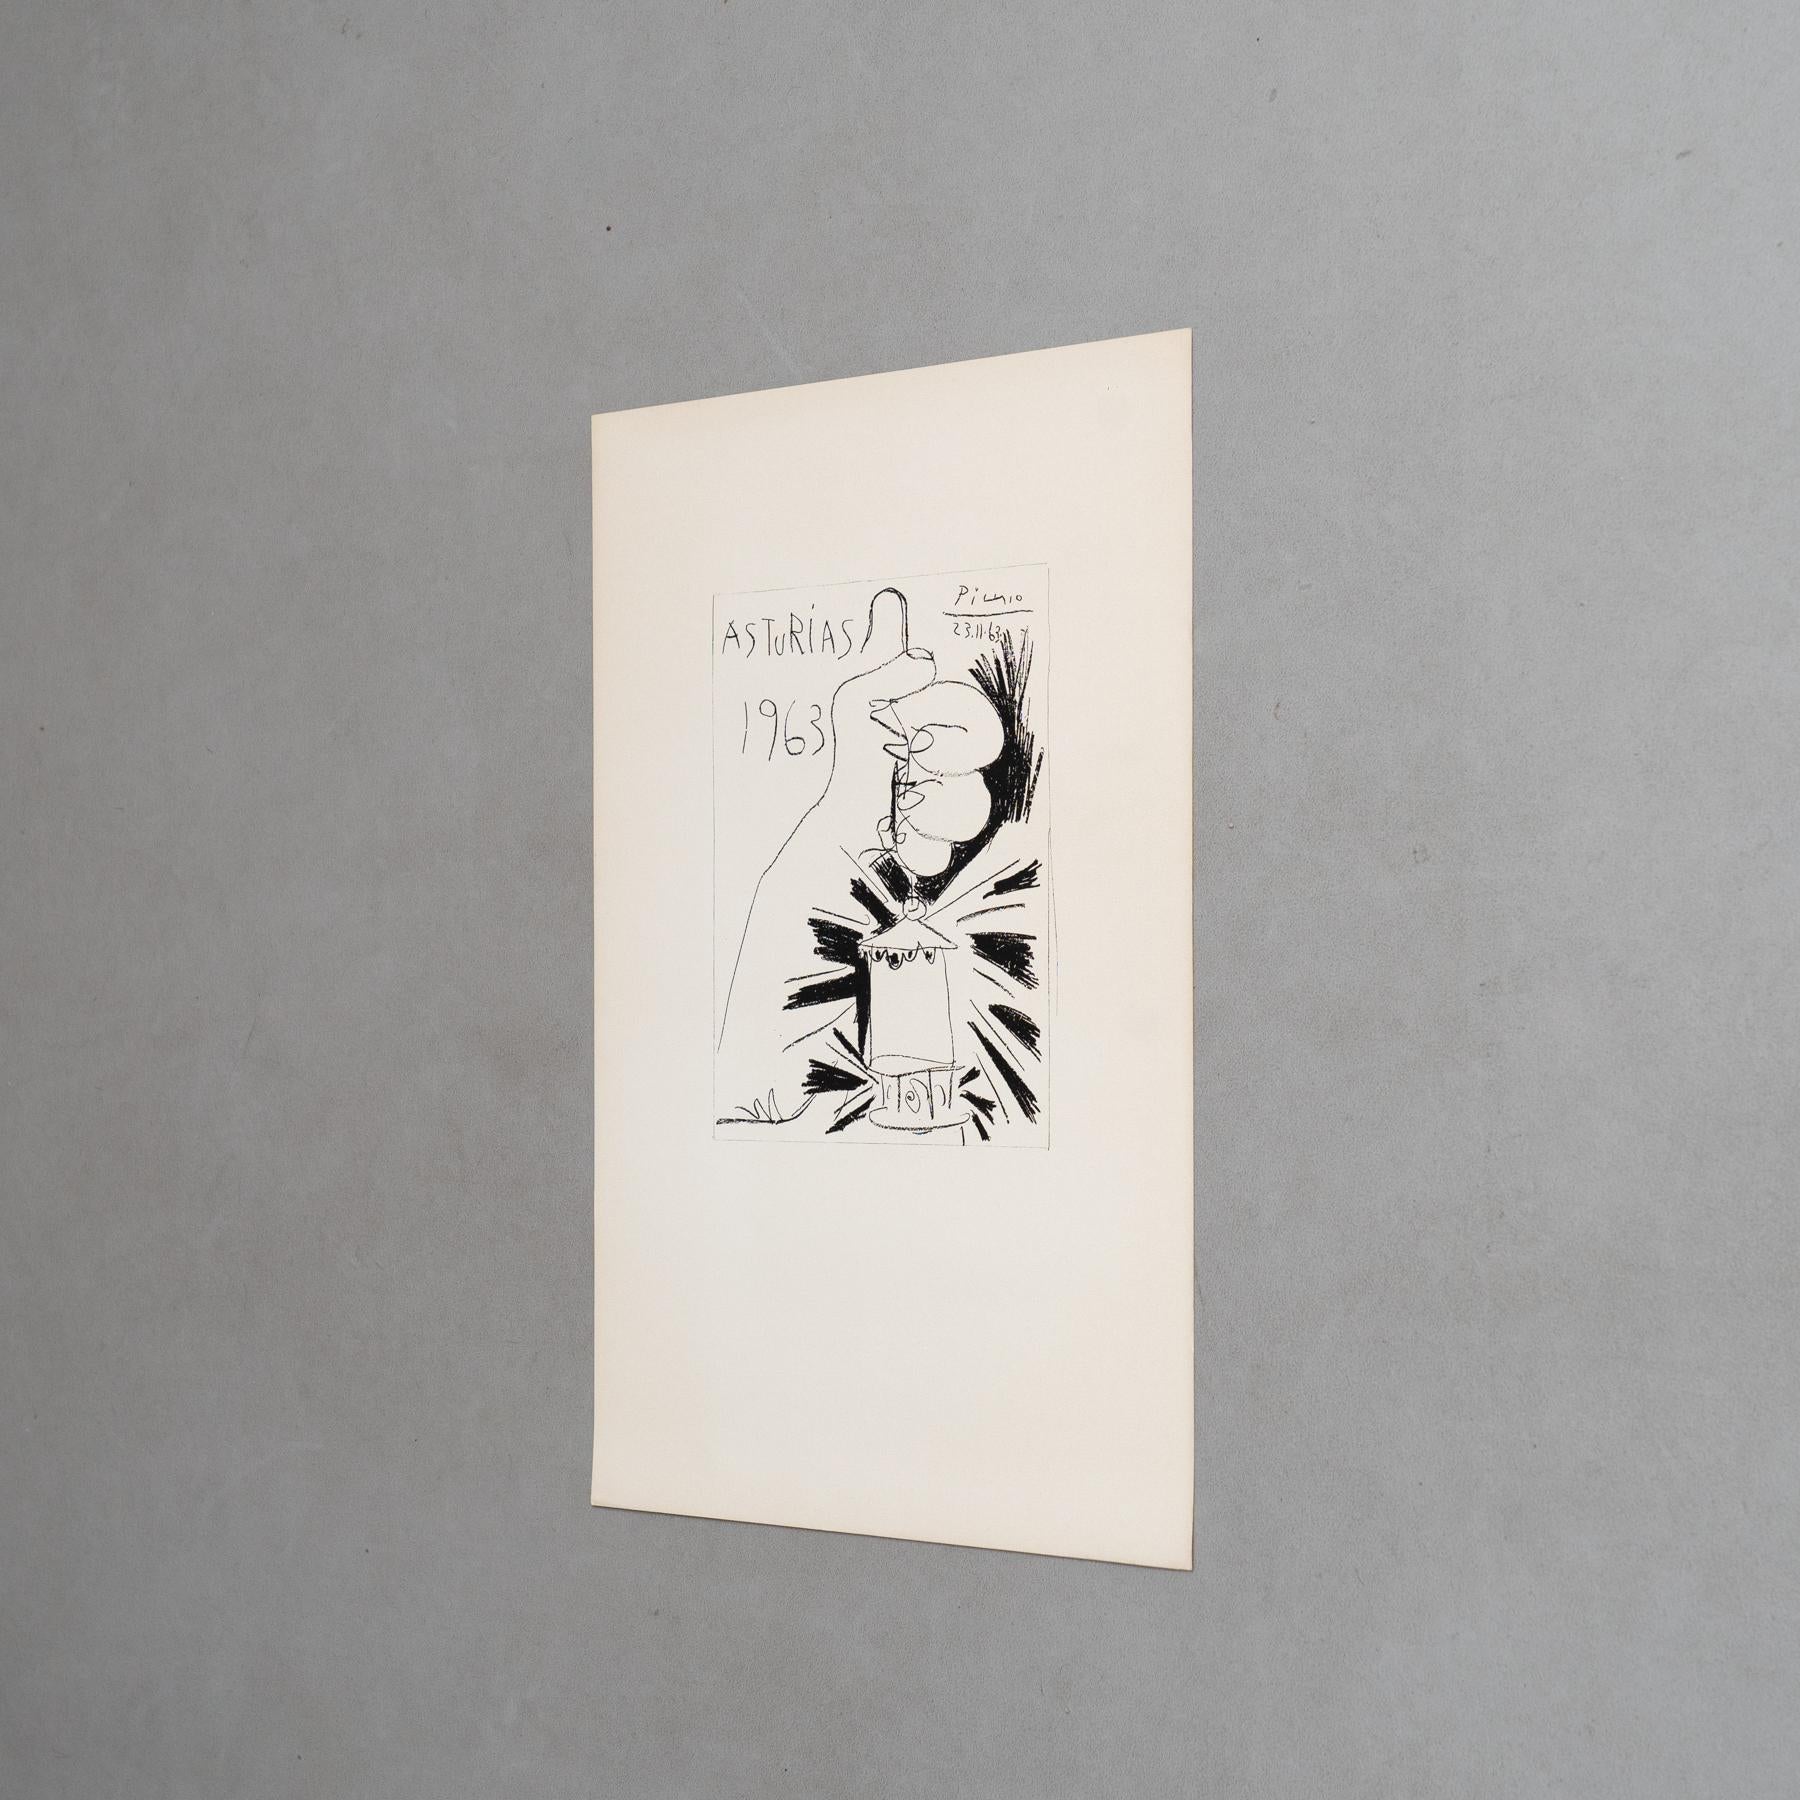 Papier Lithographie de Picasso, Asturias, 1963 en vente